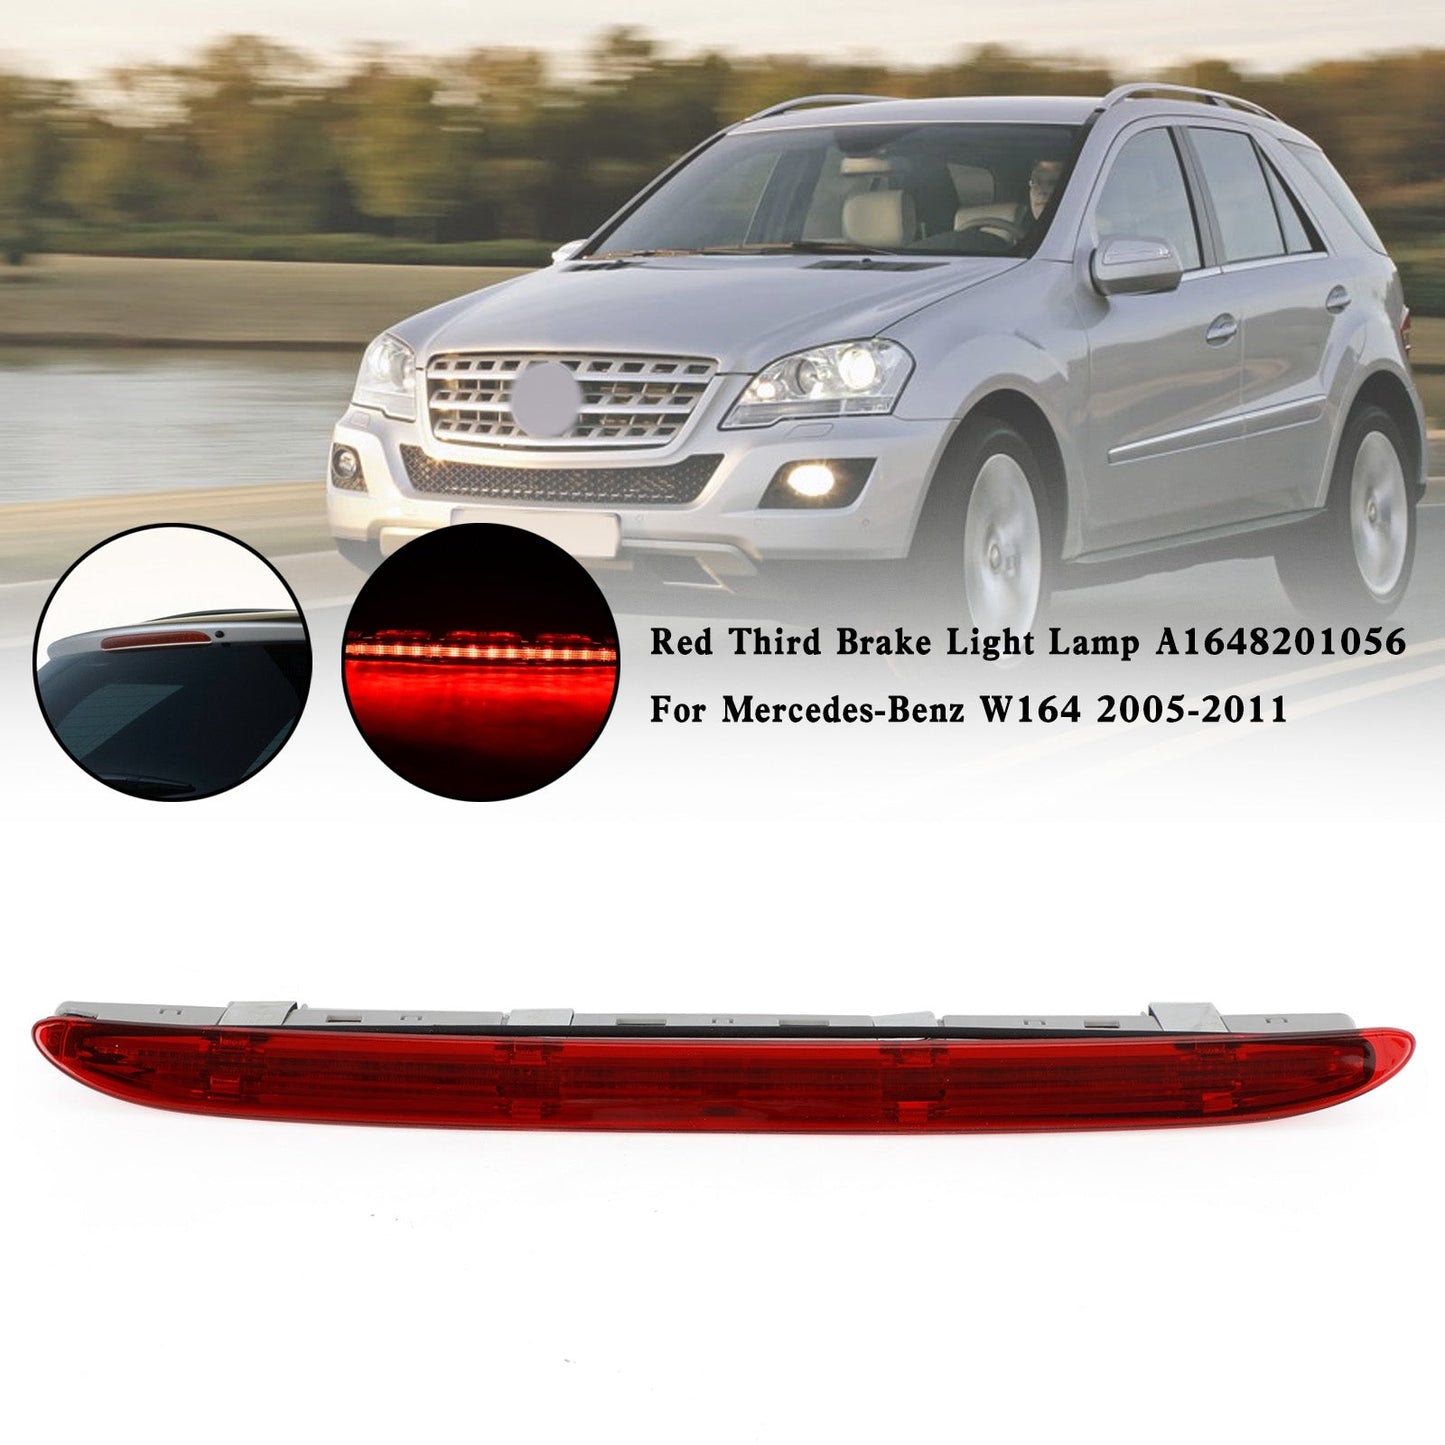 2005-2011 Mercedes-Benz W164 Red Third Brake Light Lamp A1648201056